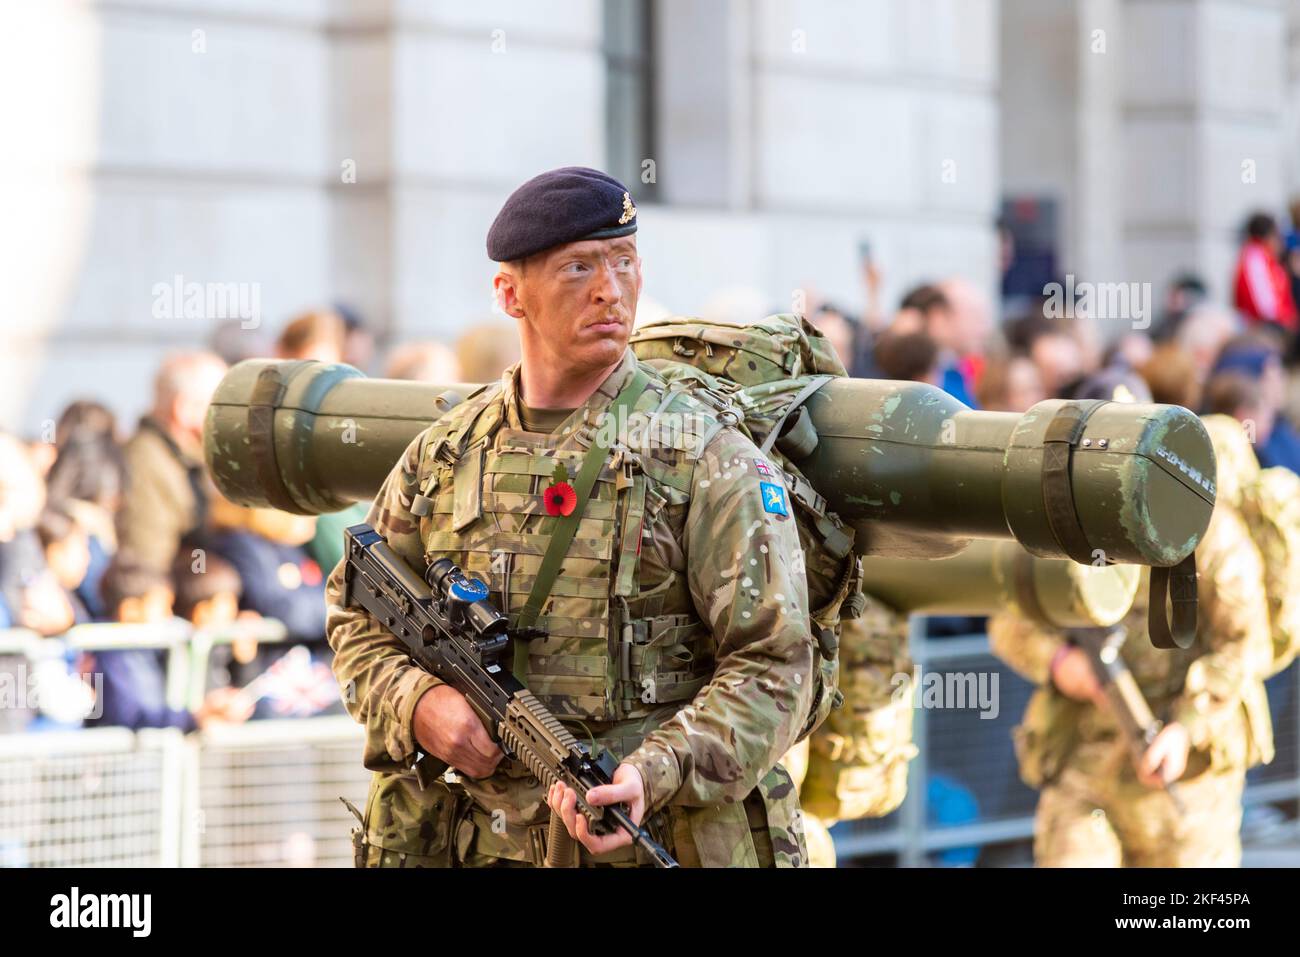 106 (Yeomanry) Regiment Royal Artillery alla sfilata del Lord Mayor's Show nella City di Londra, Regno Unito. Starstreak HVM (missile ad alta velocità) Foto Stock